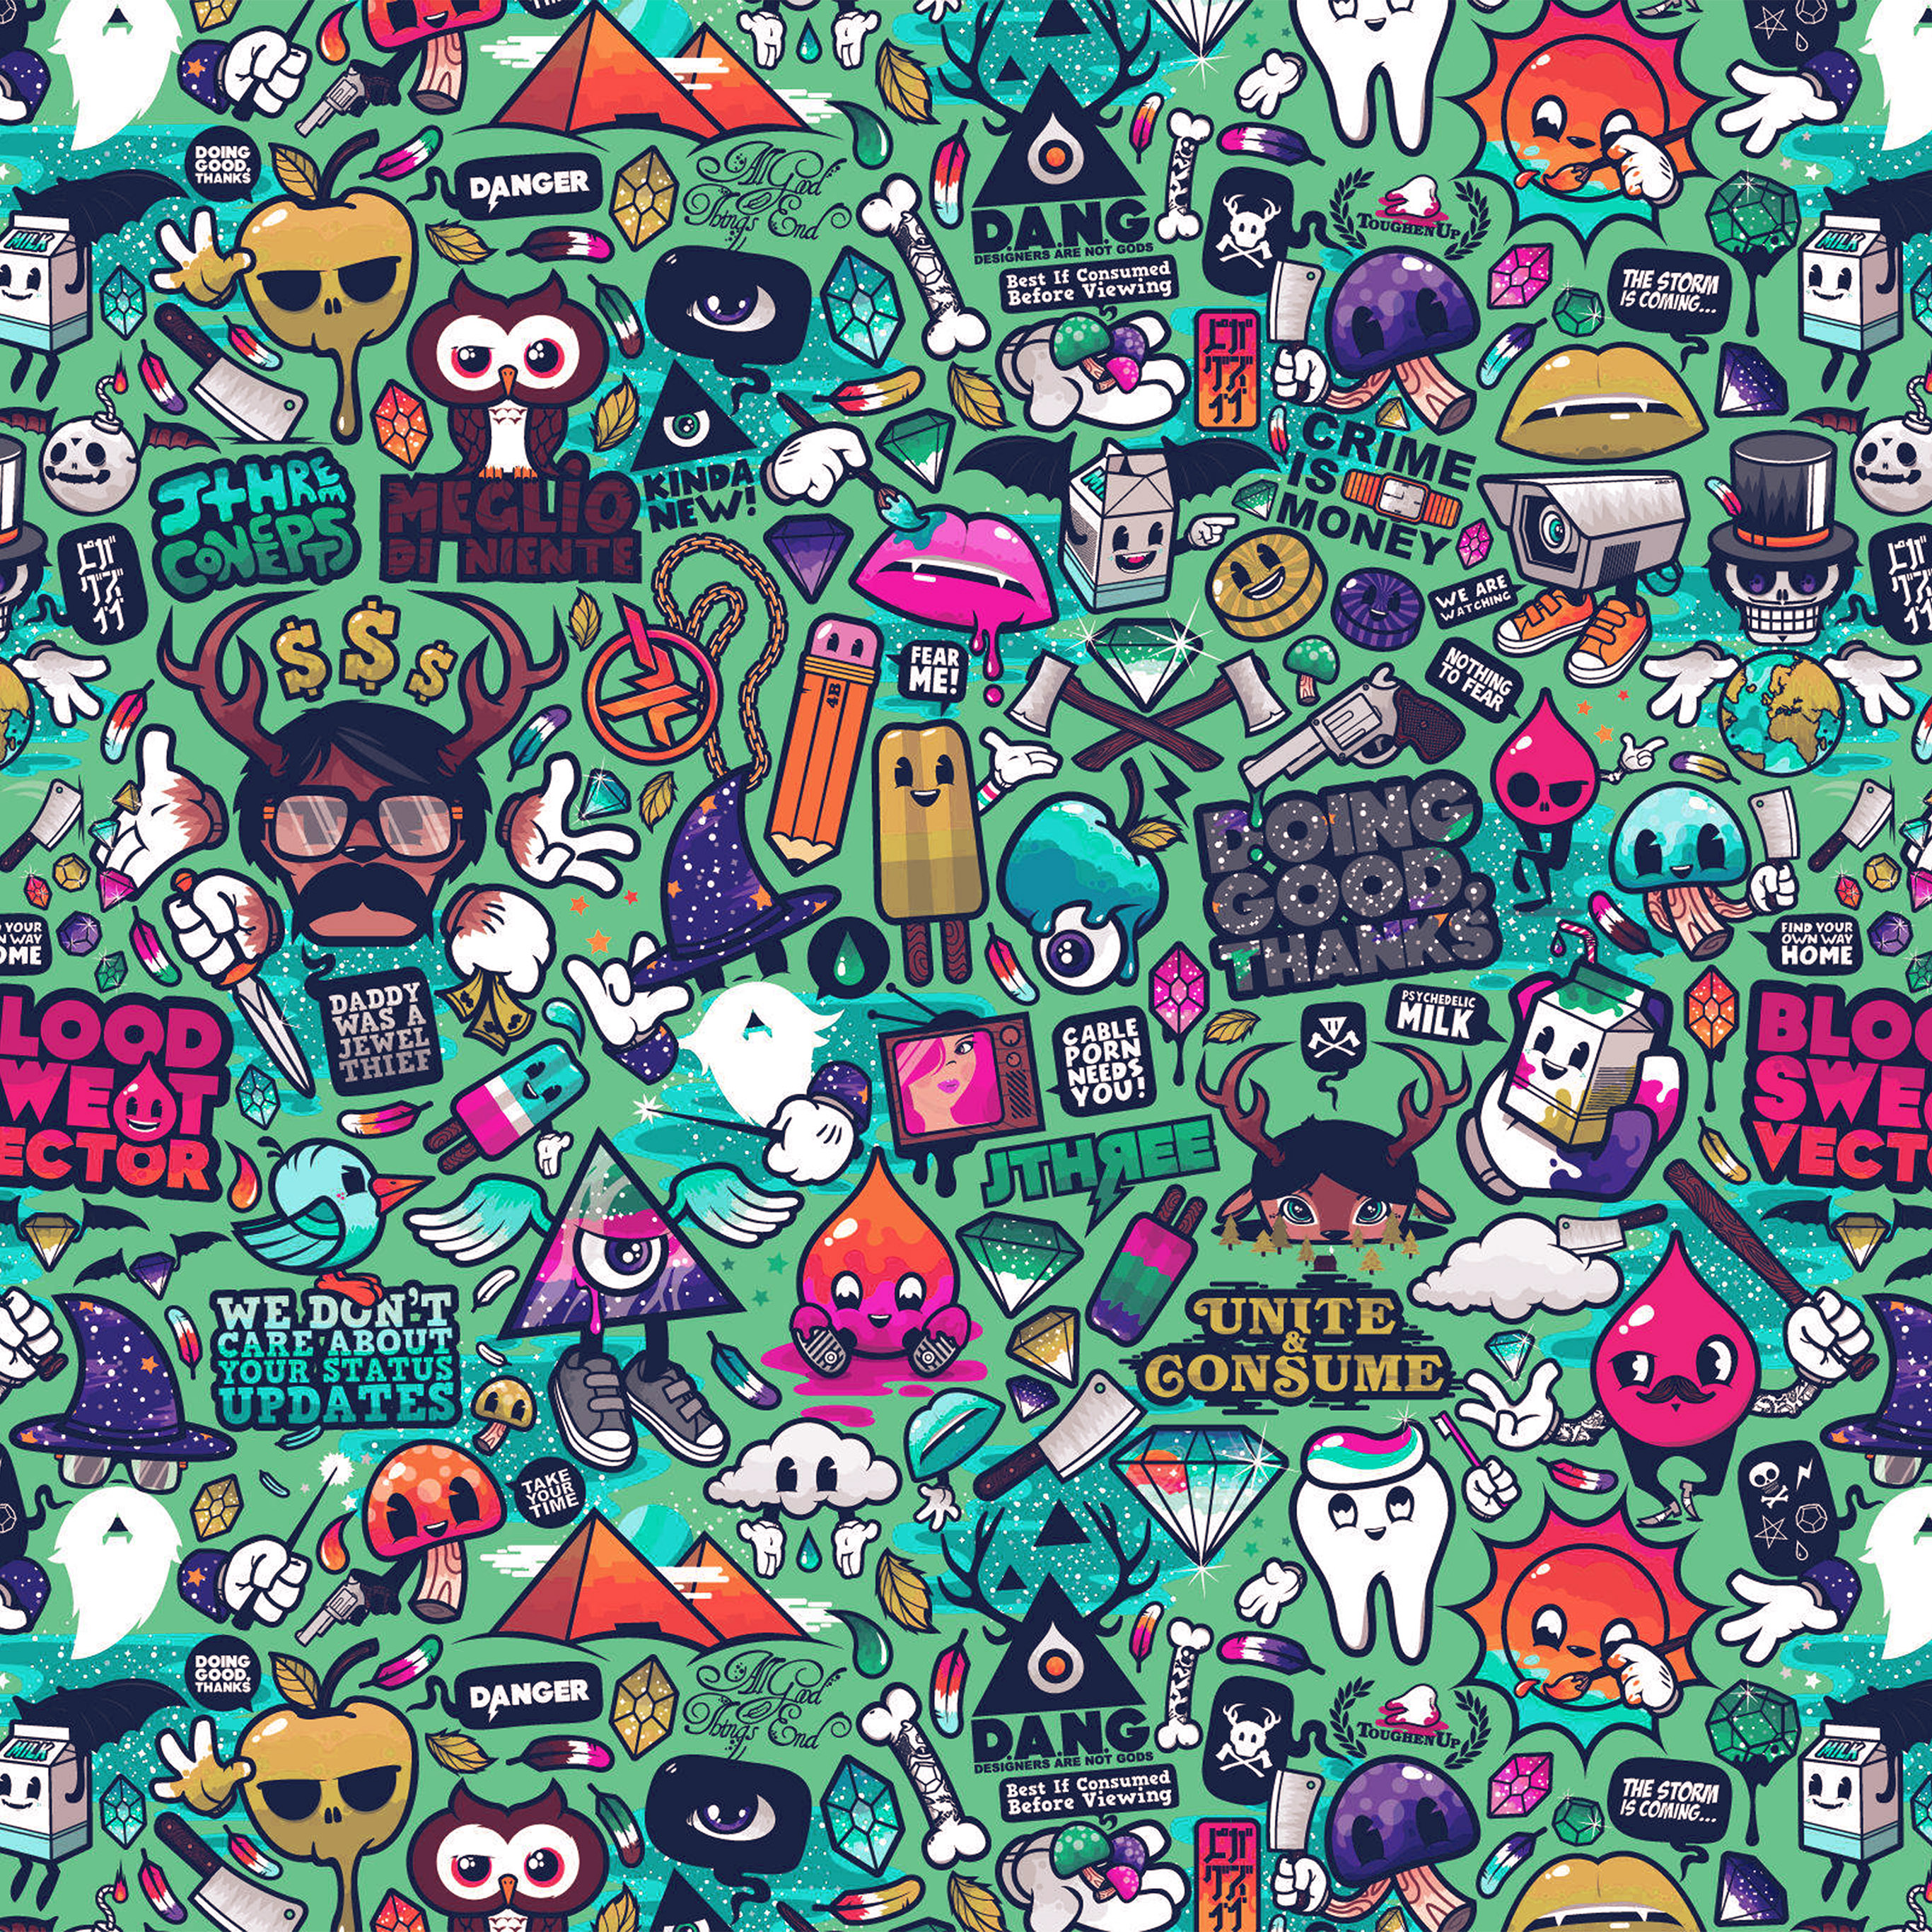 graffiti wallpaper for android, pattern, cartoon, art, design, illustration